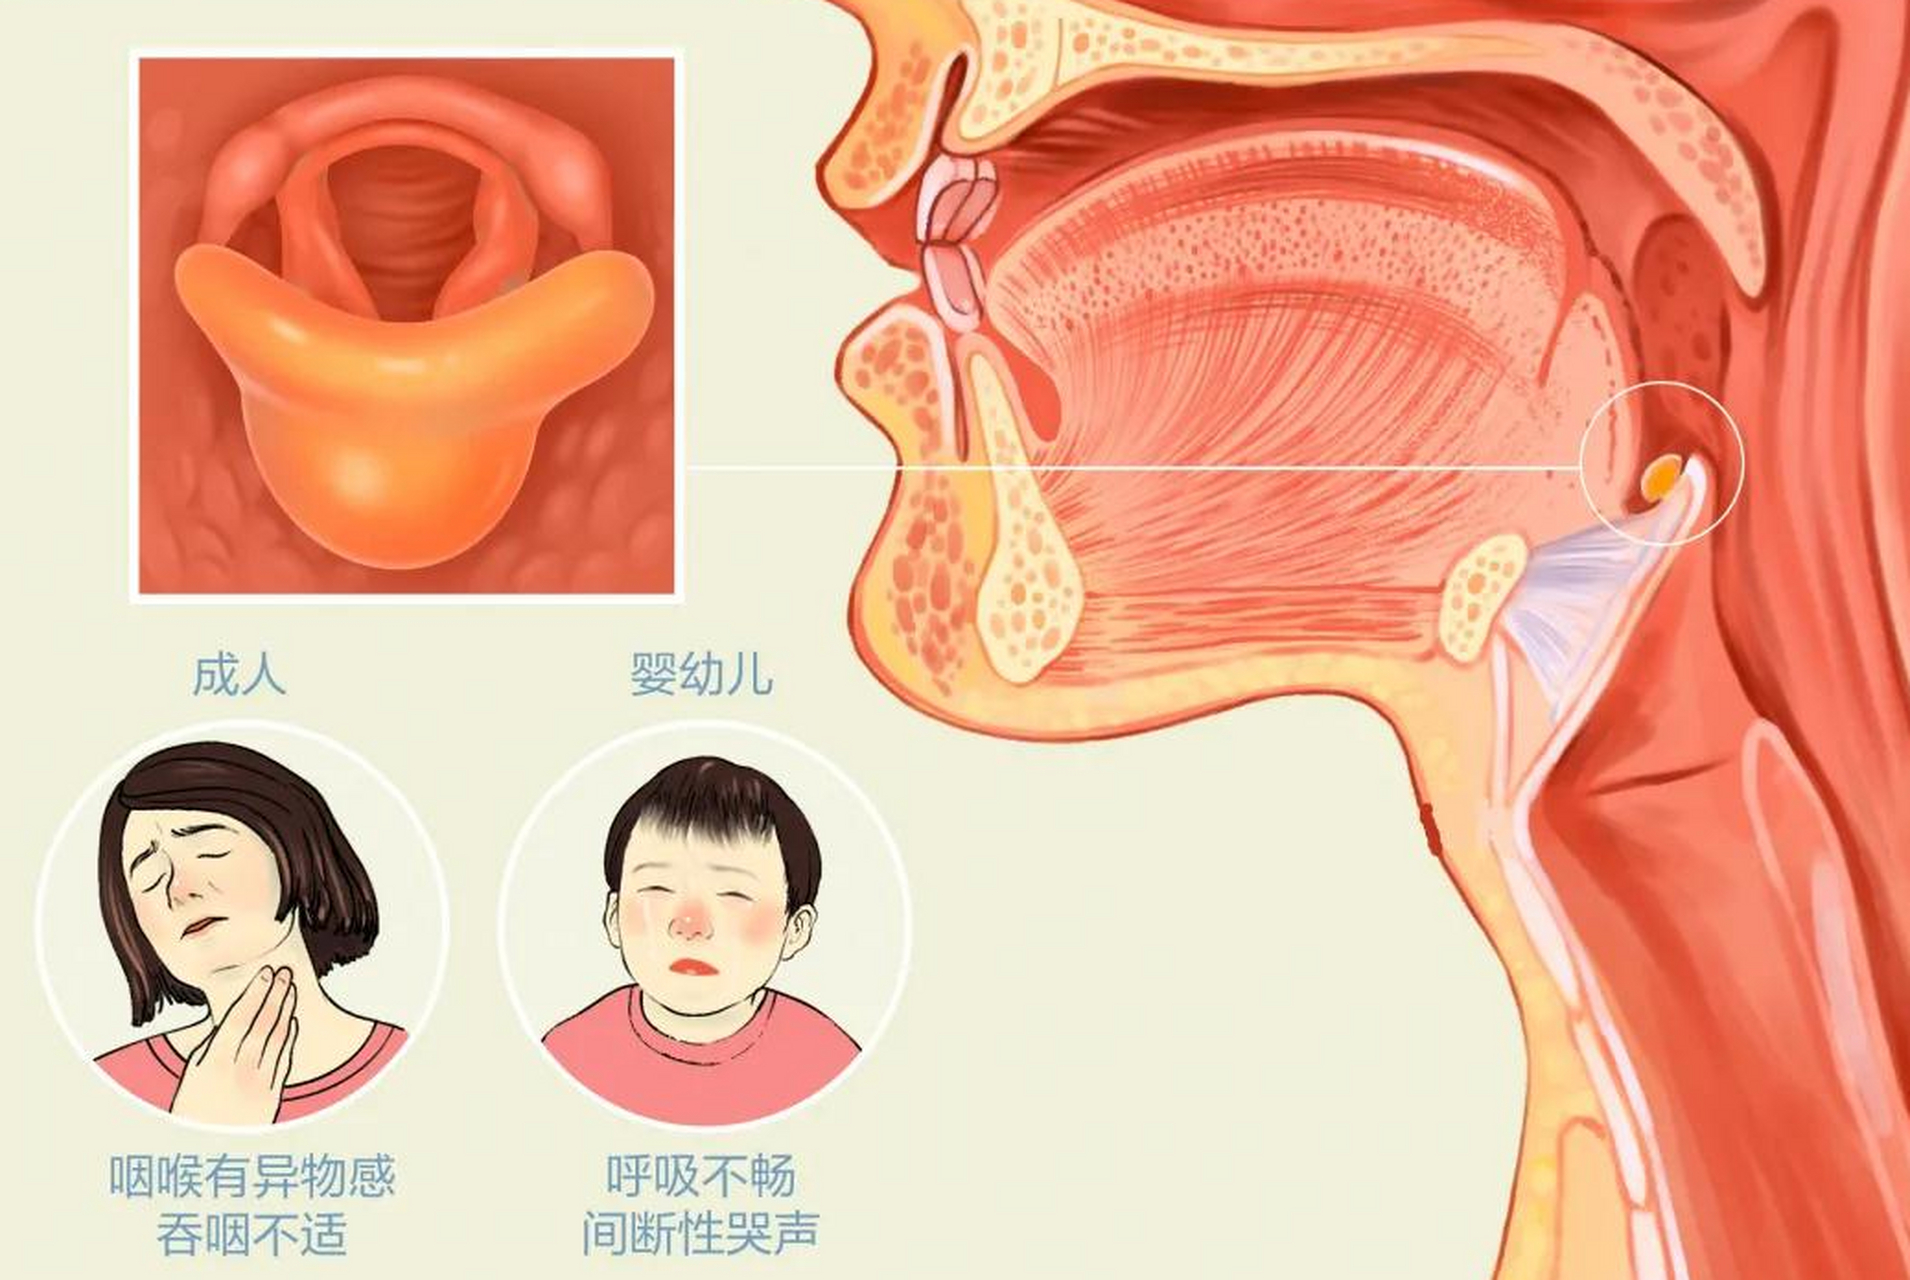 急性会厌炎的常见症状包括:   1喉部疼痛或灼热感; 2